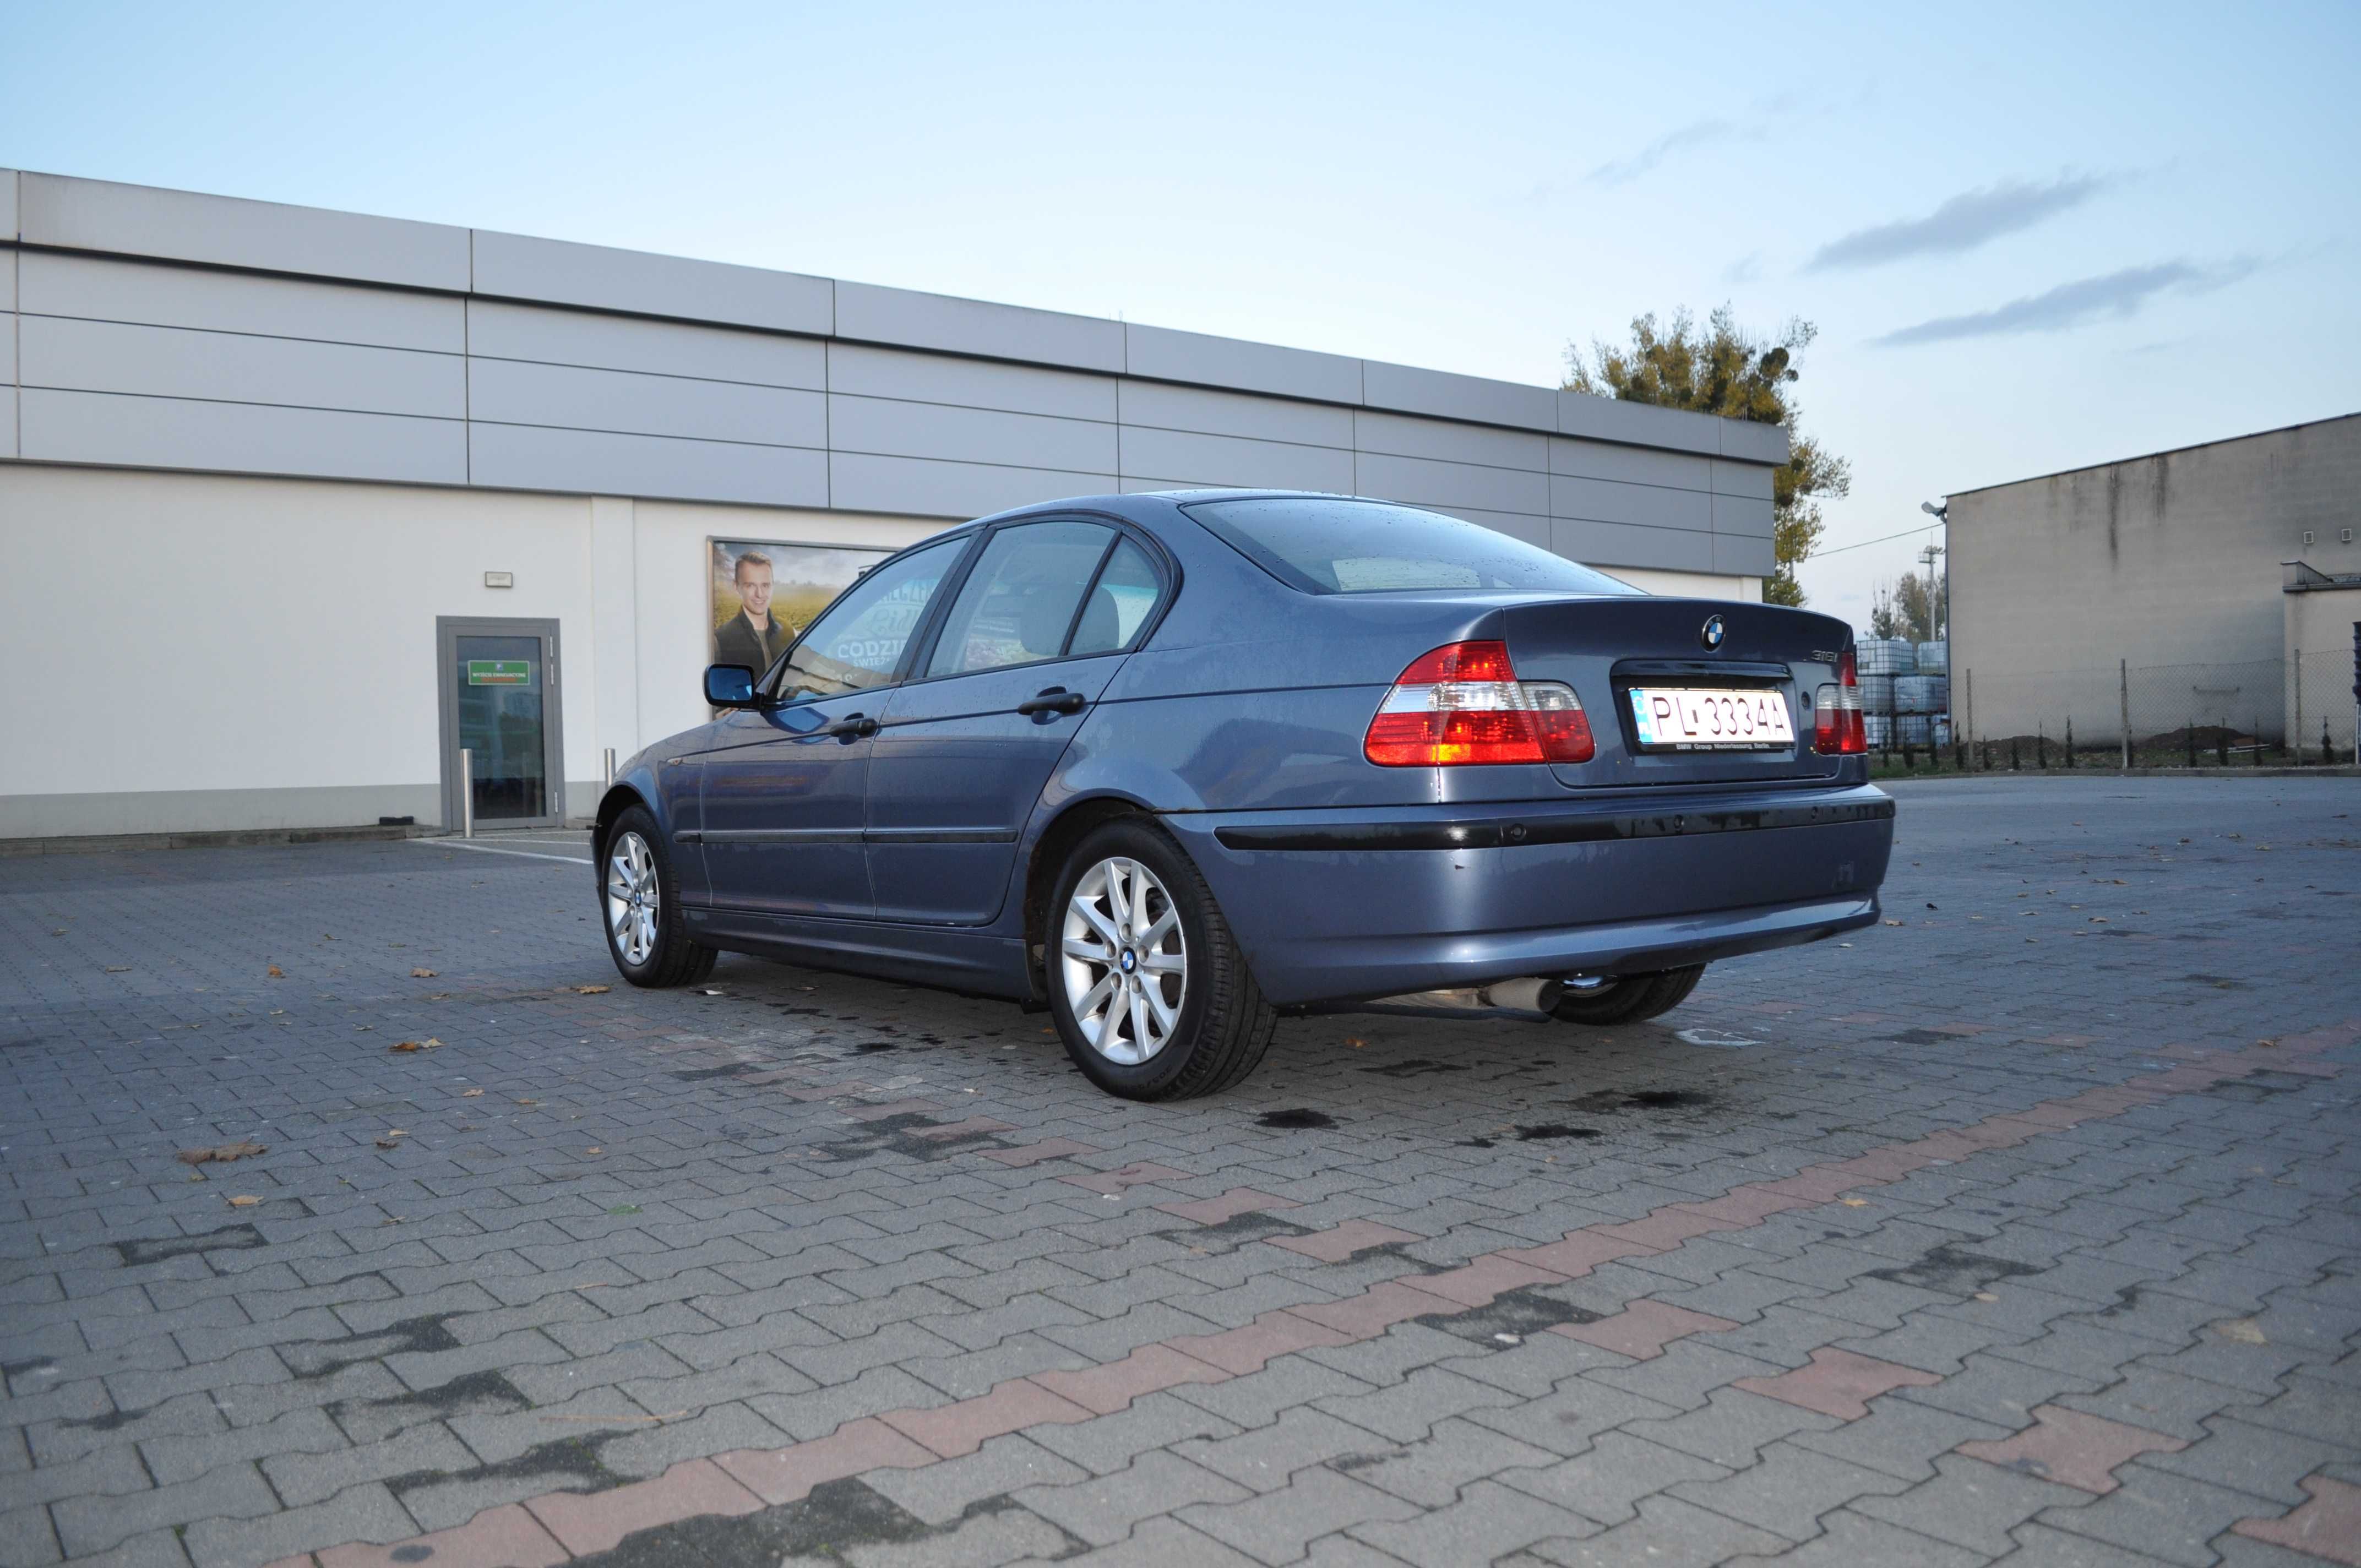 BMW e46, 2003, 316i, 1,8l po liftingu, komplet opon na zmianę, klima